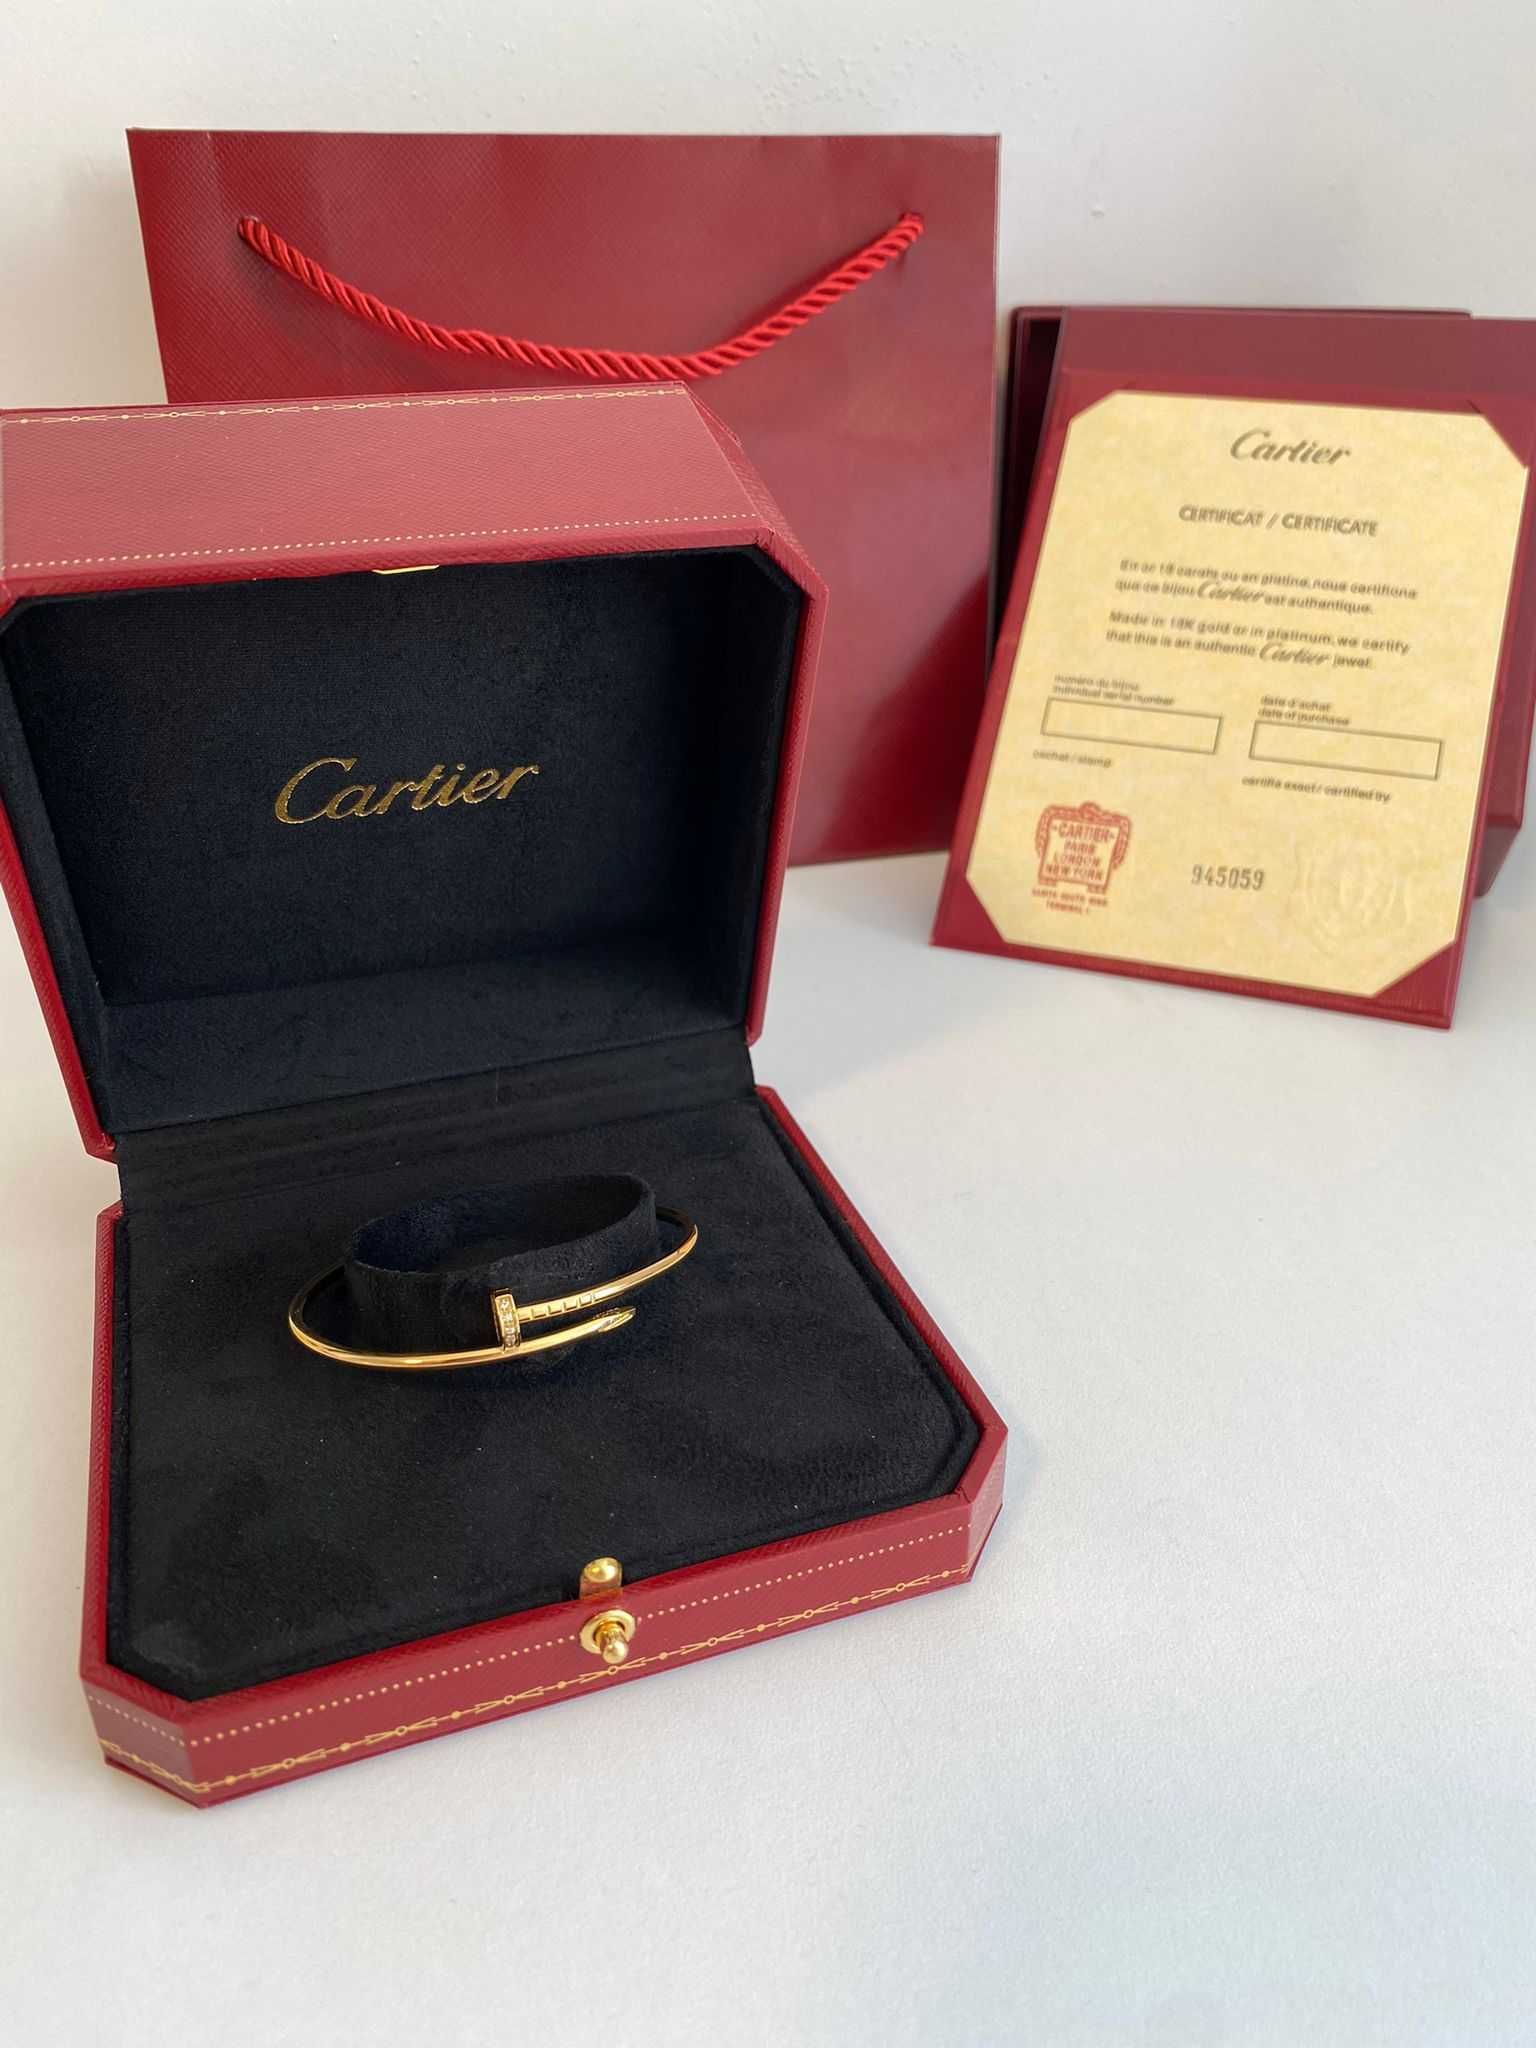 Brățară Cartier Juste un Clou Small 15 Gold 24K diamond cu cutie